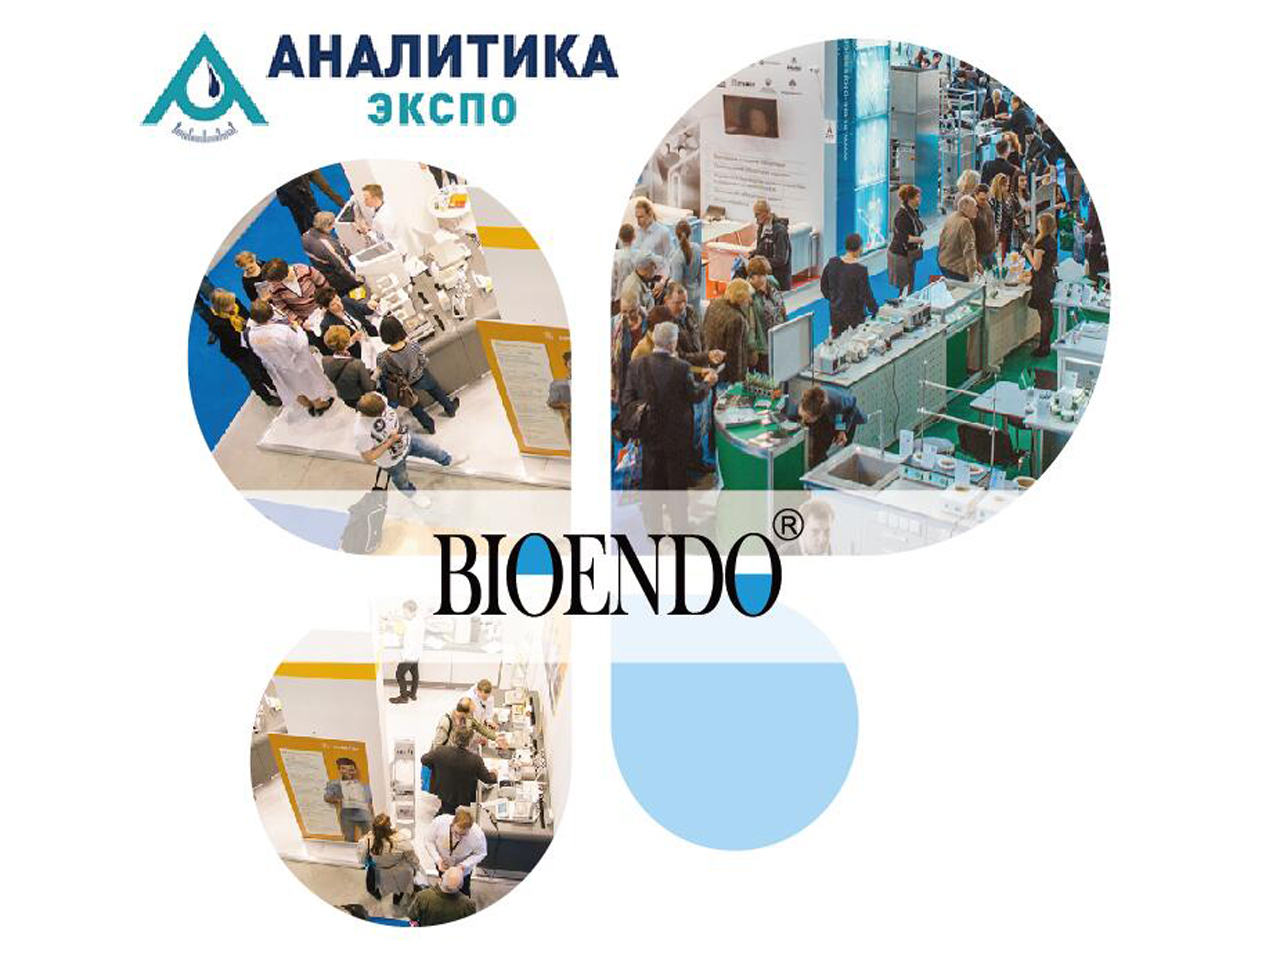 2019 Ρωσία, Μόσχα, Έκθεση εργαστηριακών οργάνων και χημικών αντιδραστηρίων